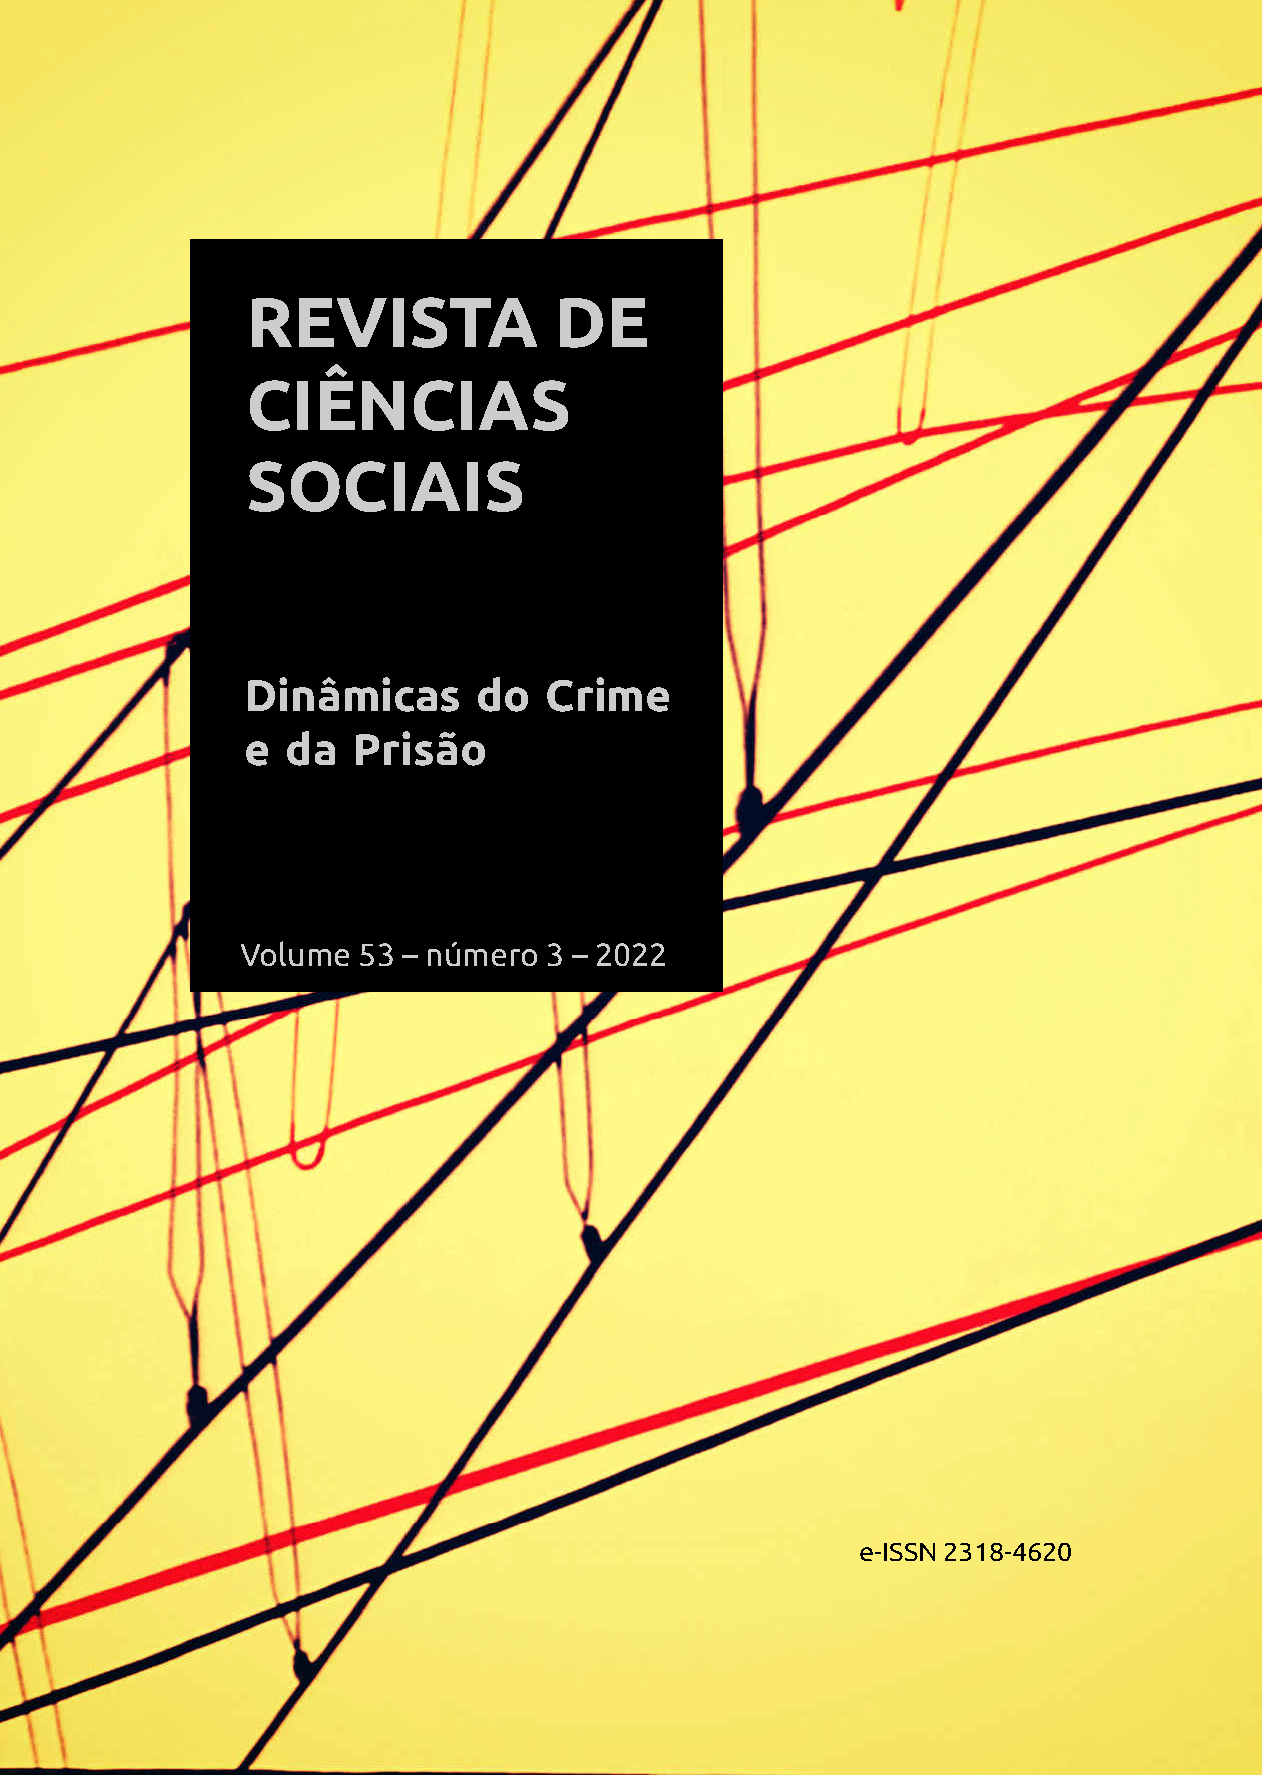 Revista de Ciências Sociais (RCS), Volume 53, número 3 de 2022. Dossiê Dinâmicas do Crime e da Prisão